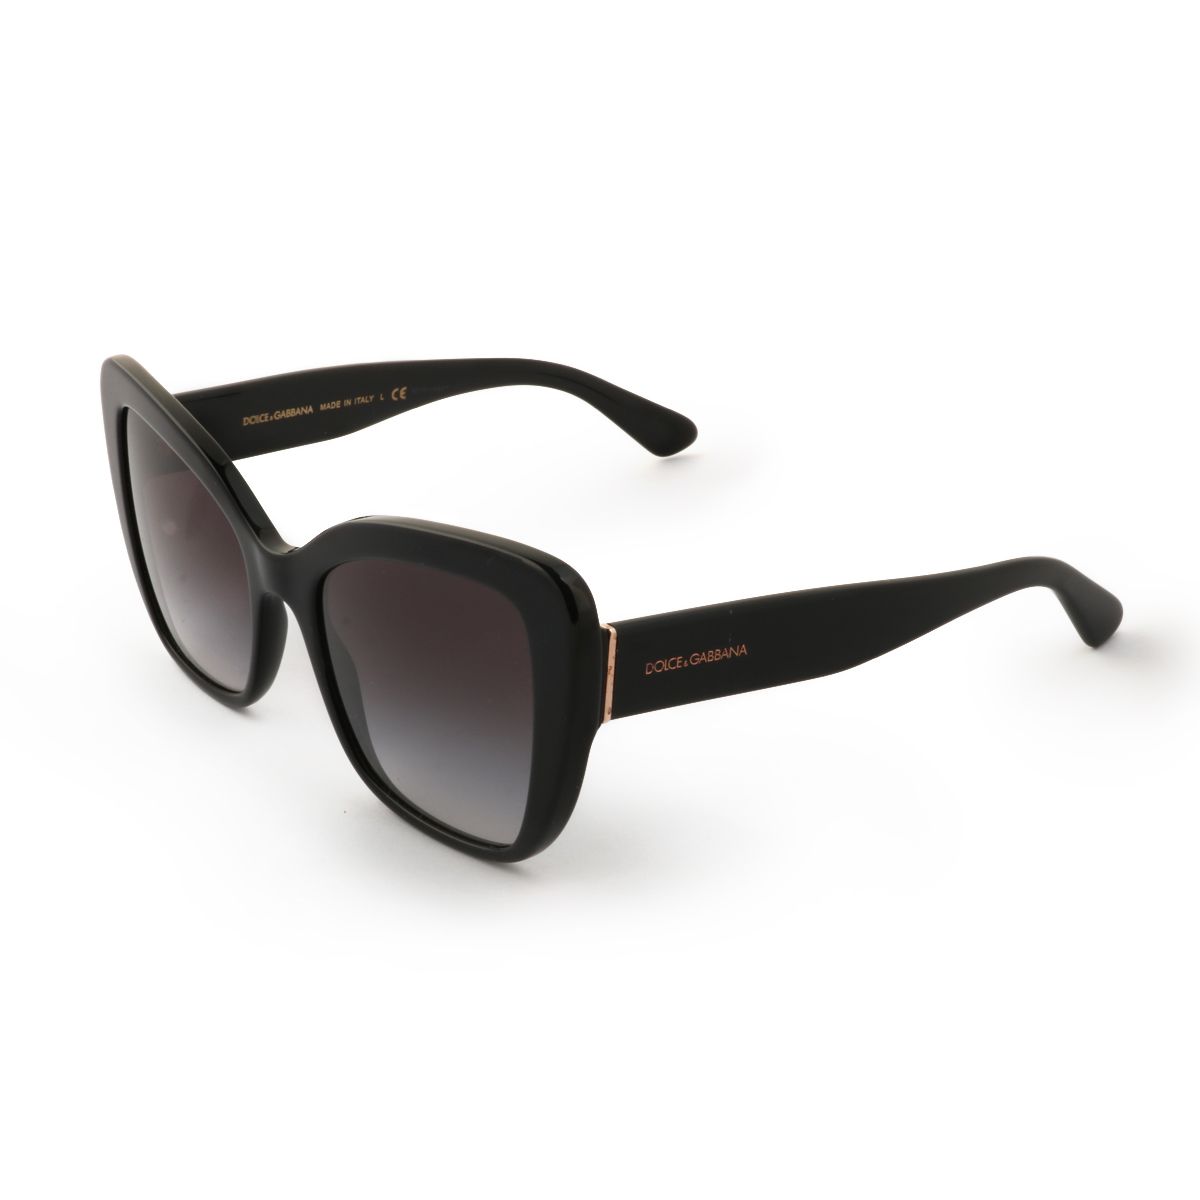 DG4348 Cat Eye Sunglasses 501 8G - size 54